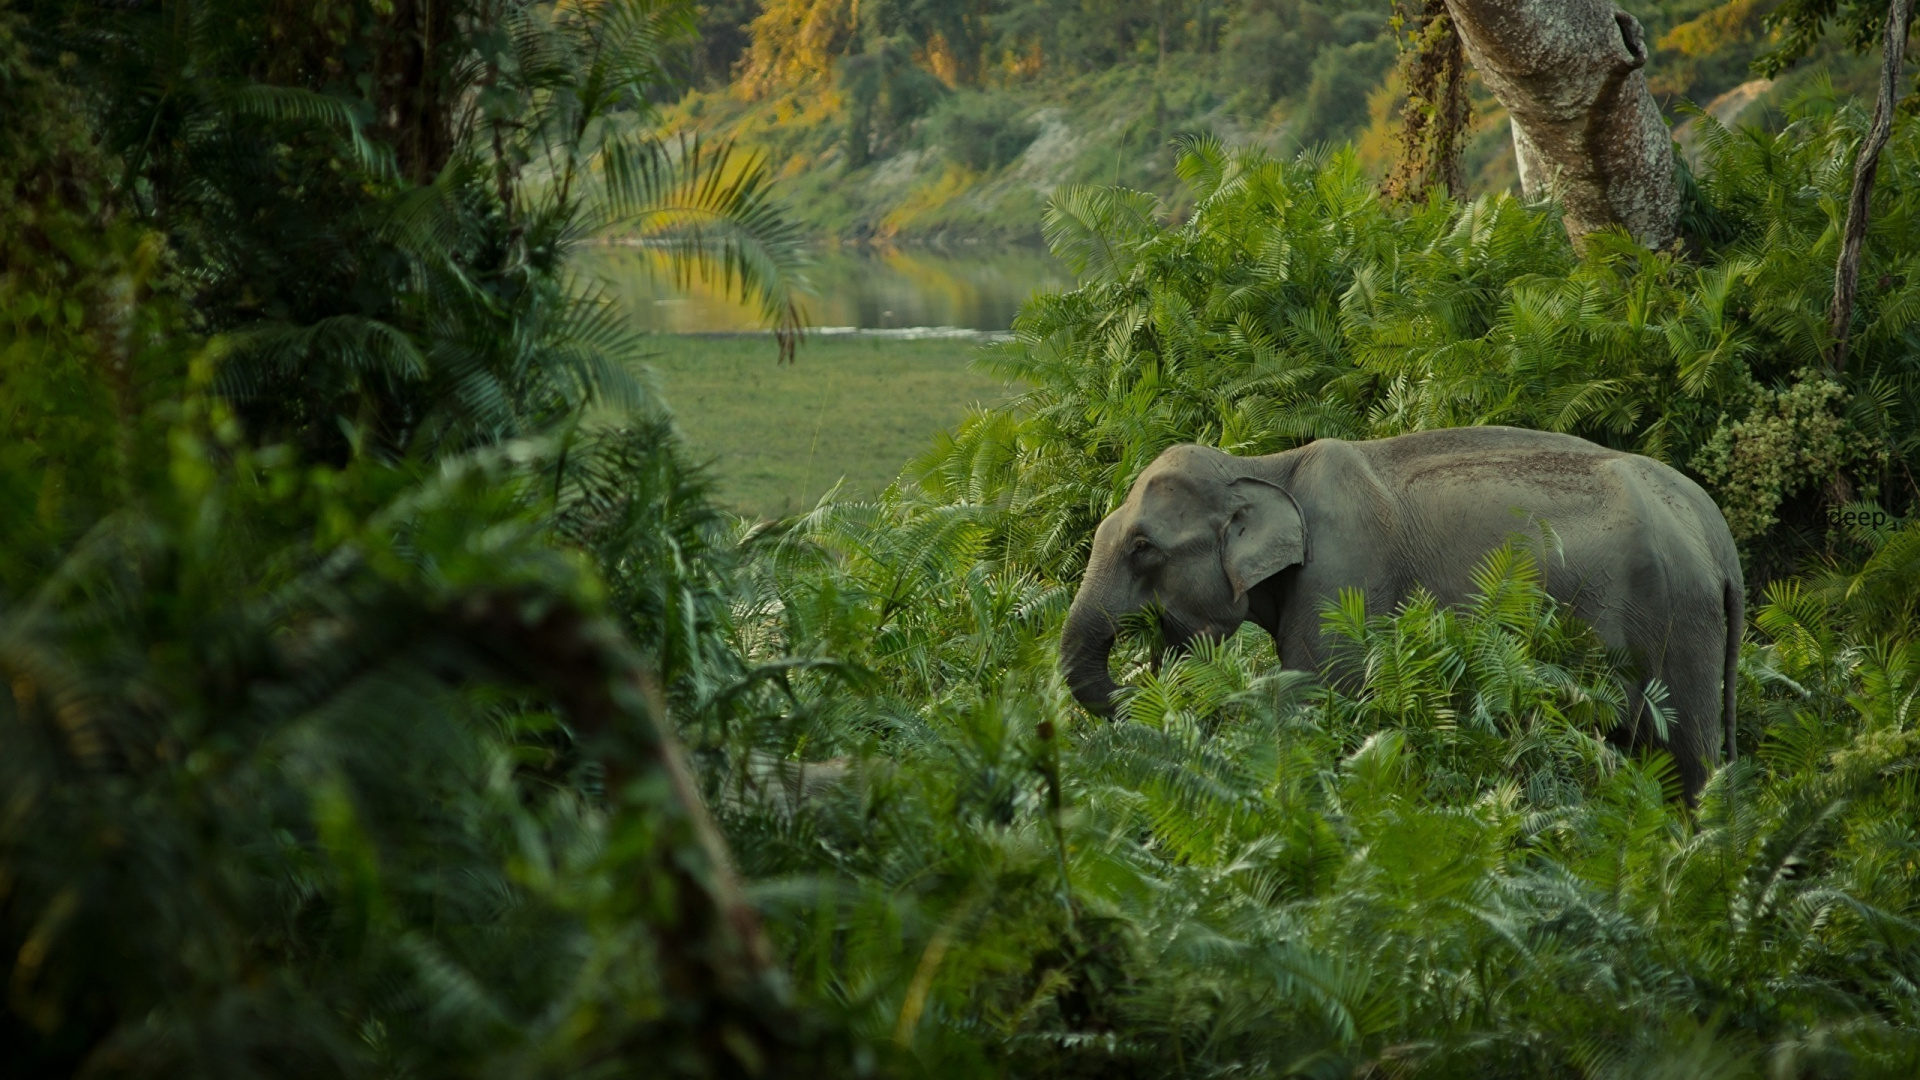 非洲森林中的大象, 野生动物, 自然保护区, 丛林, 植被 壁纸 1920x1080 允许